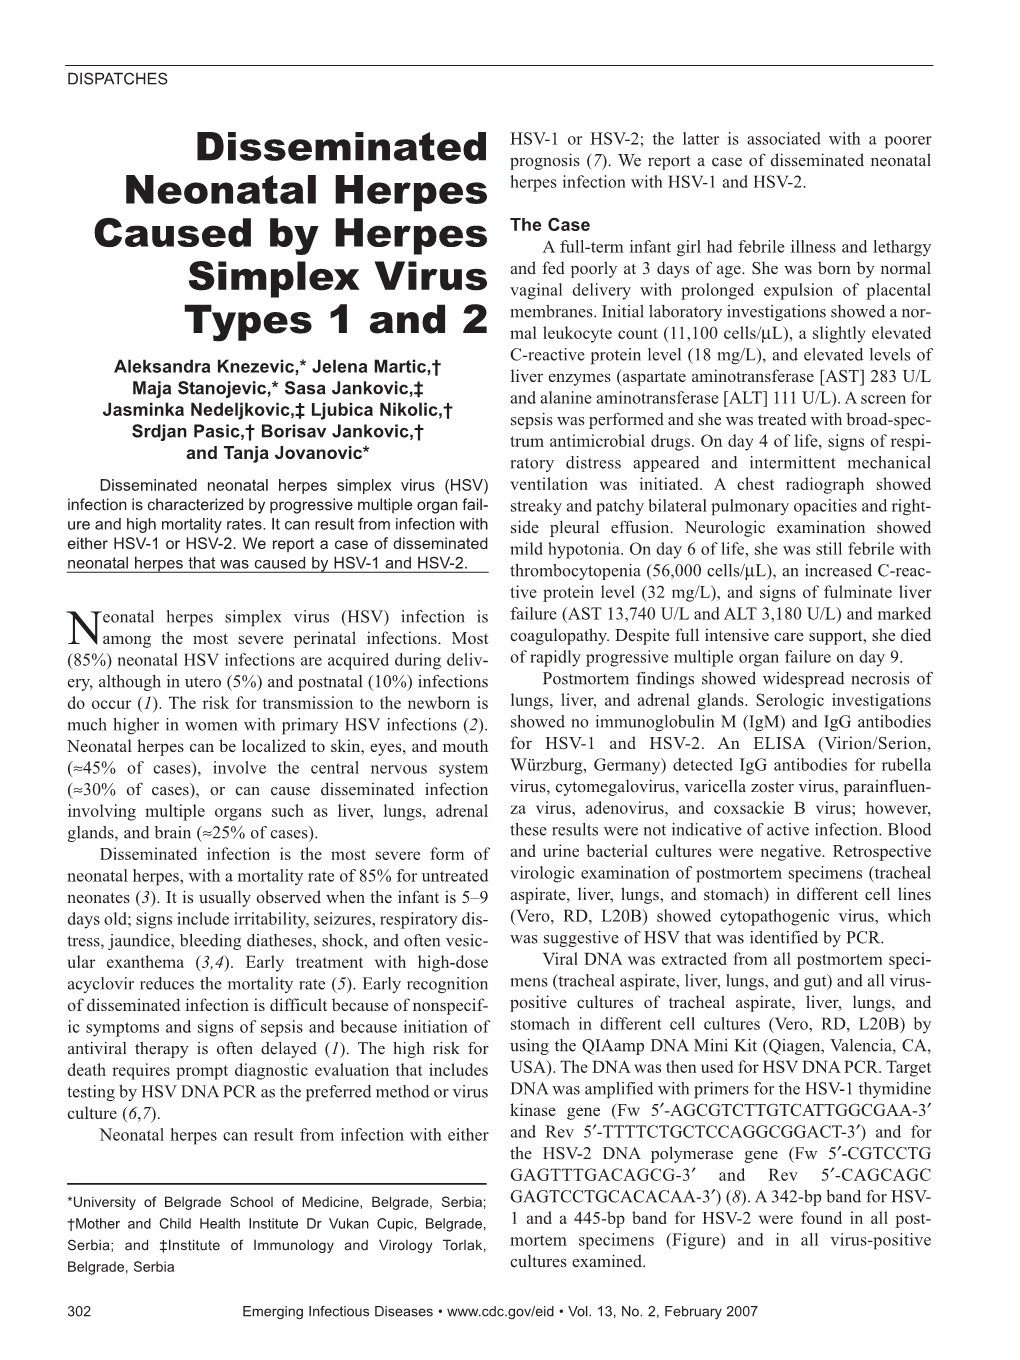 Disseminated Neonatal Herpes Caused by Herpes Simplex Virus